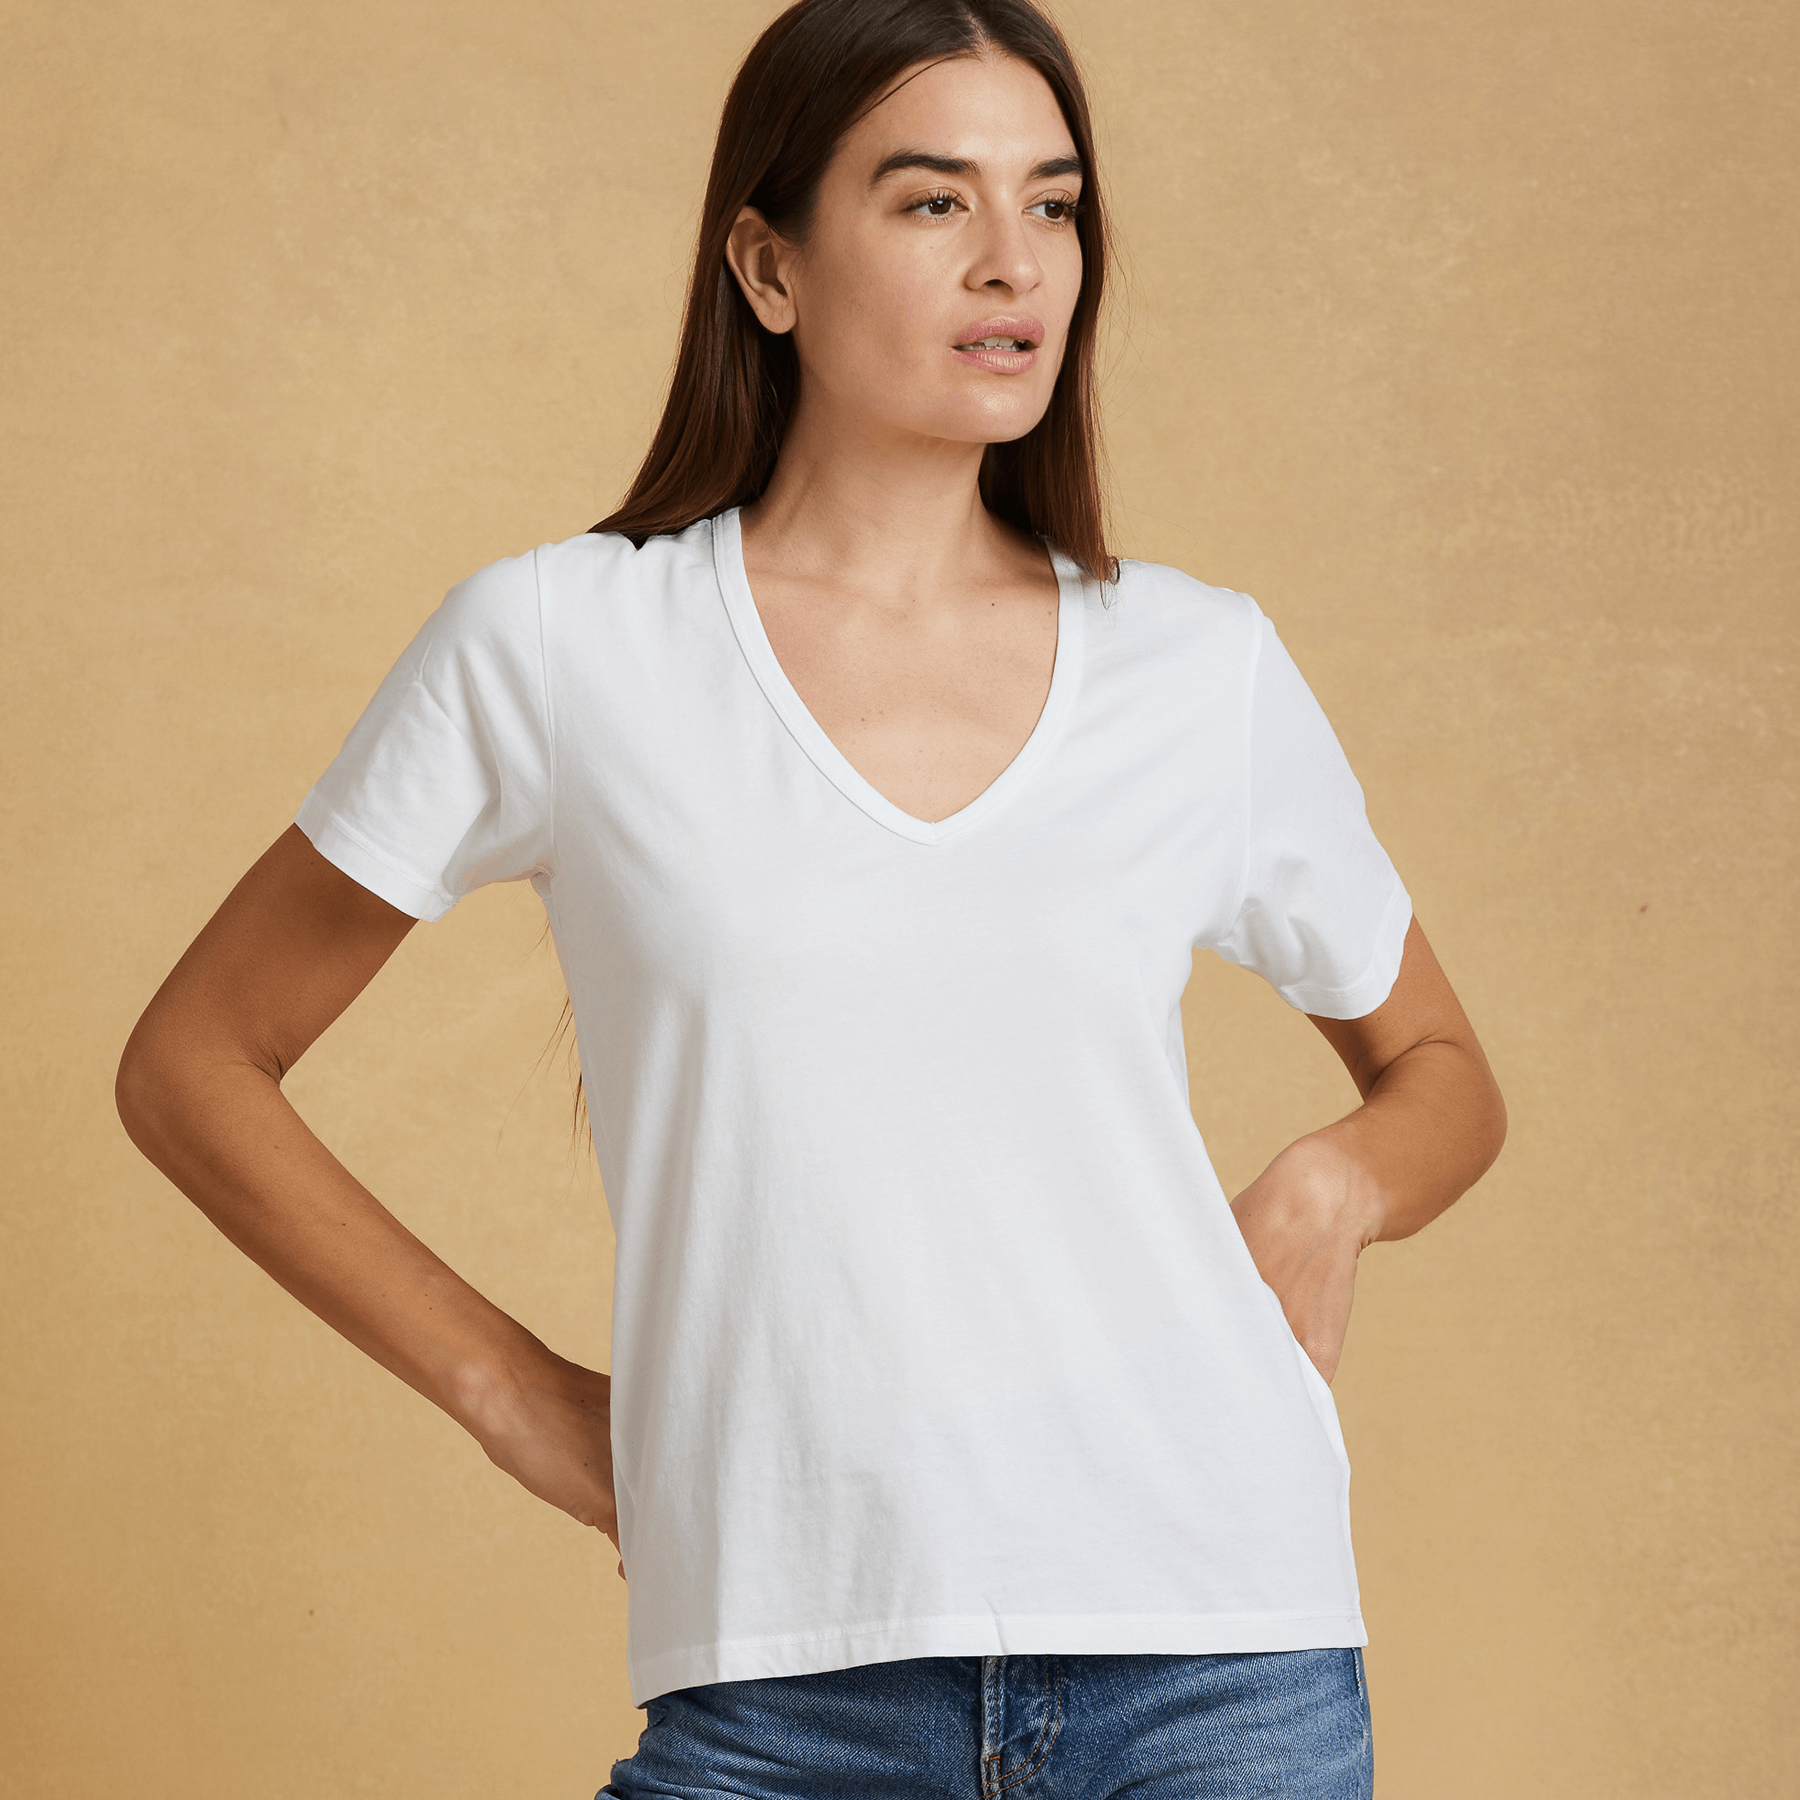 Women's Deep V-Neck T-Shirt - A comfortable t-shirt with a